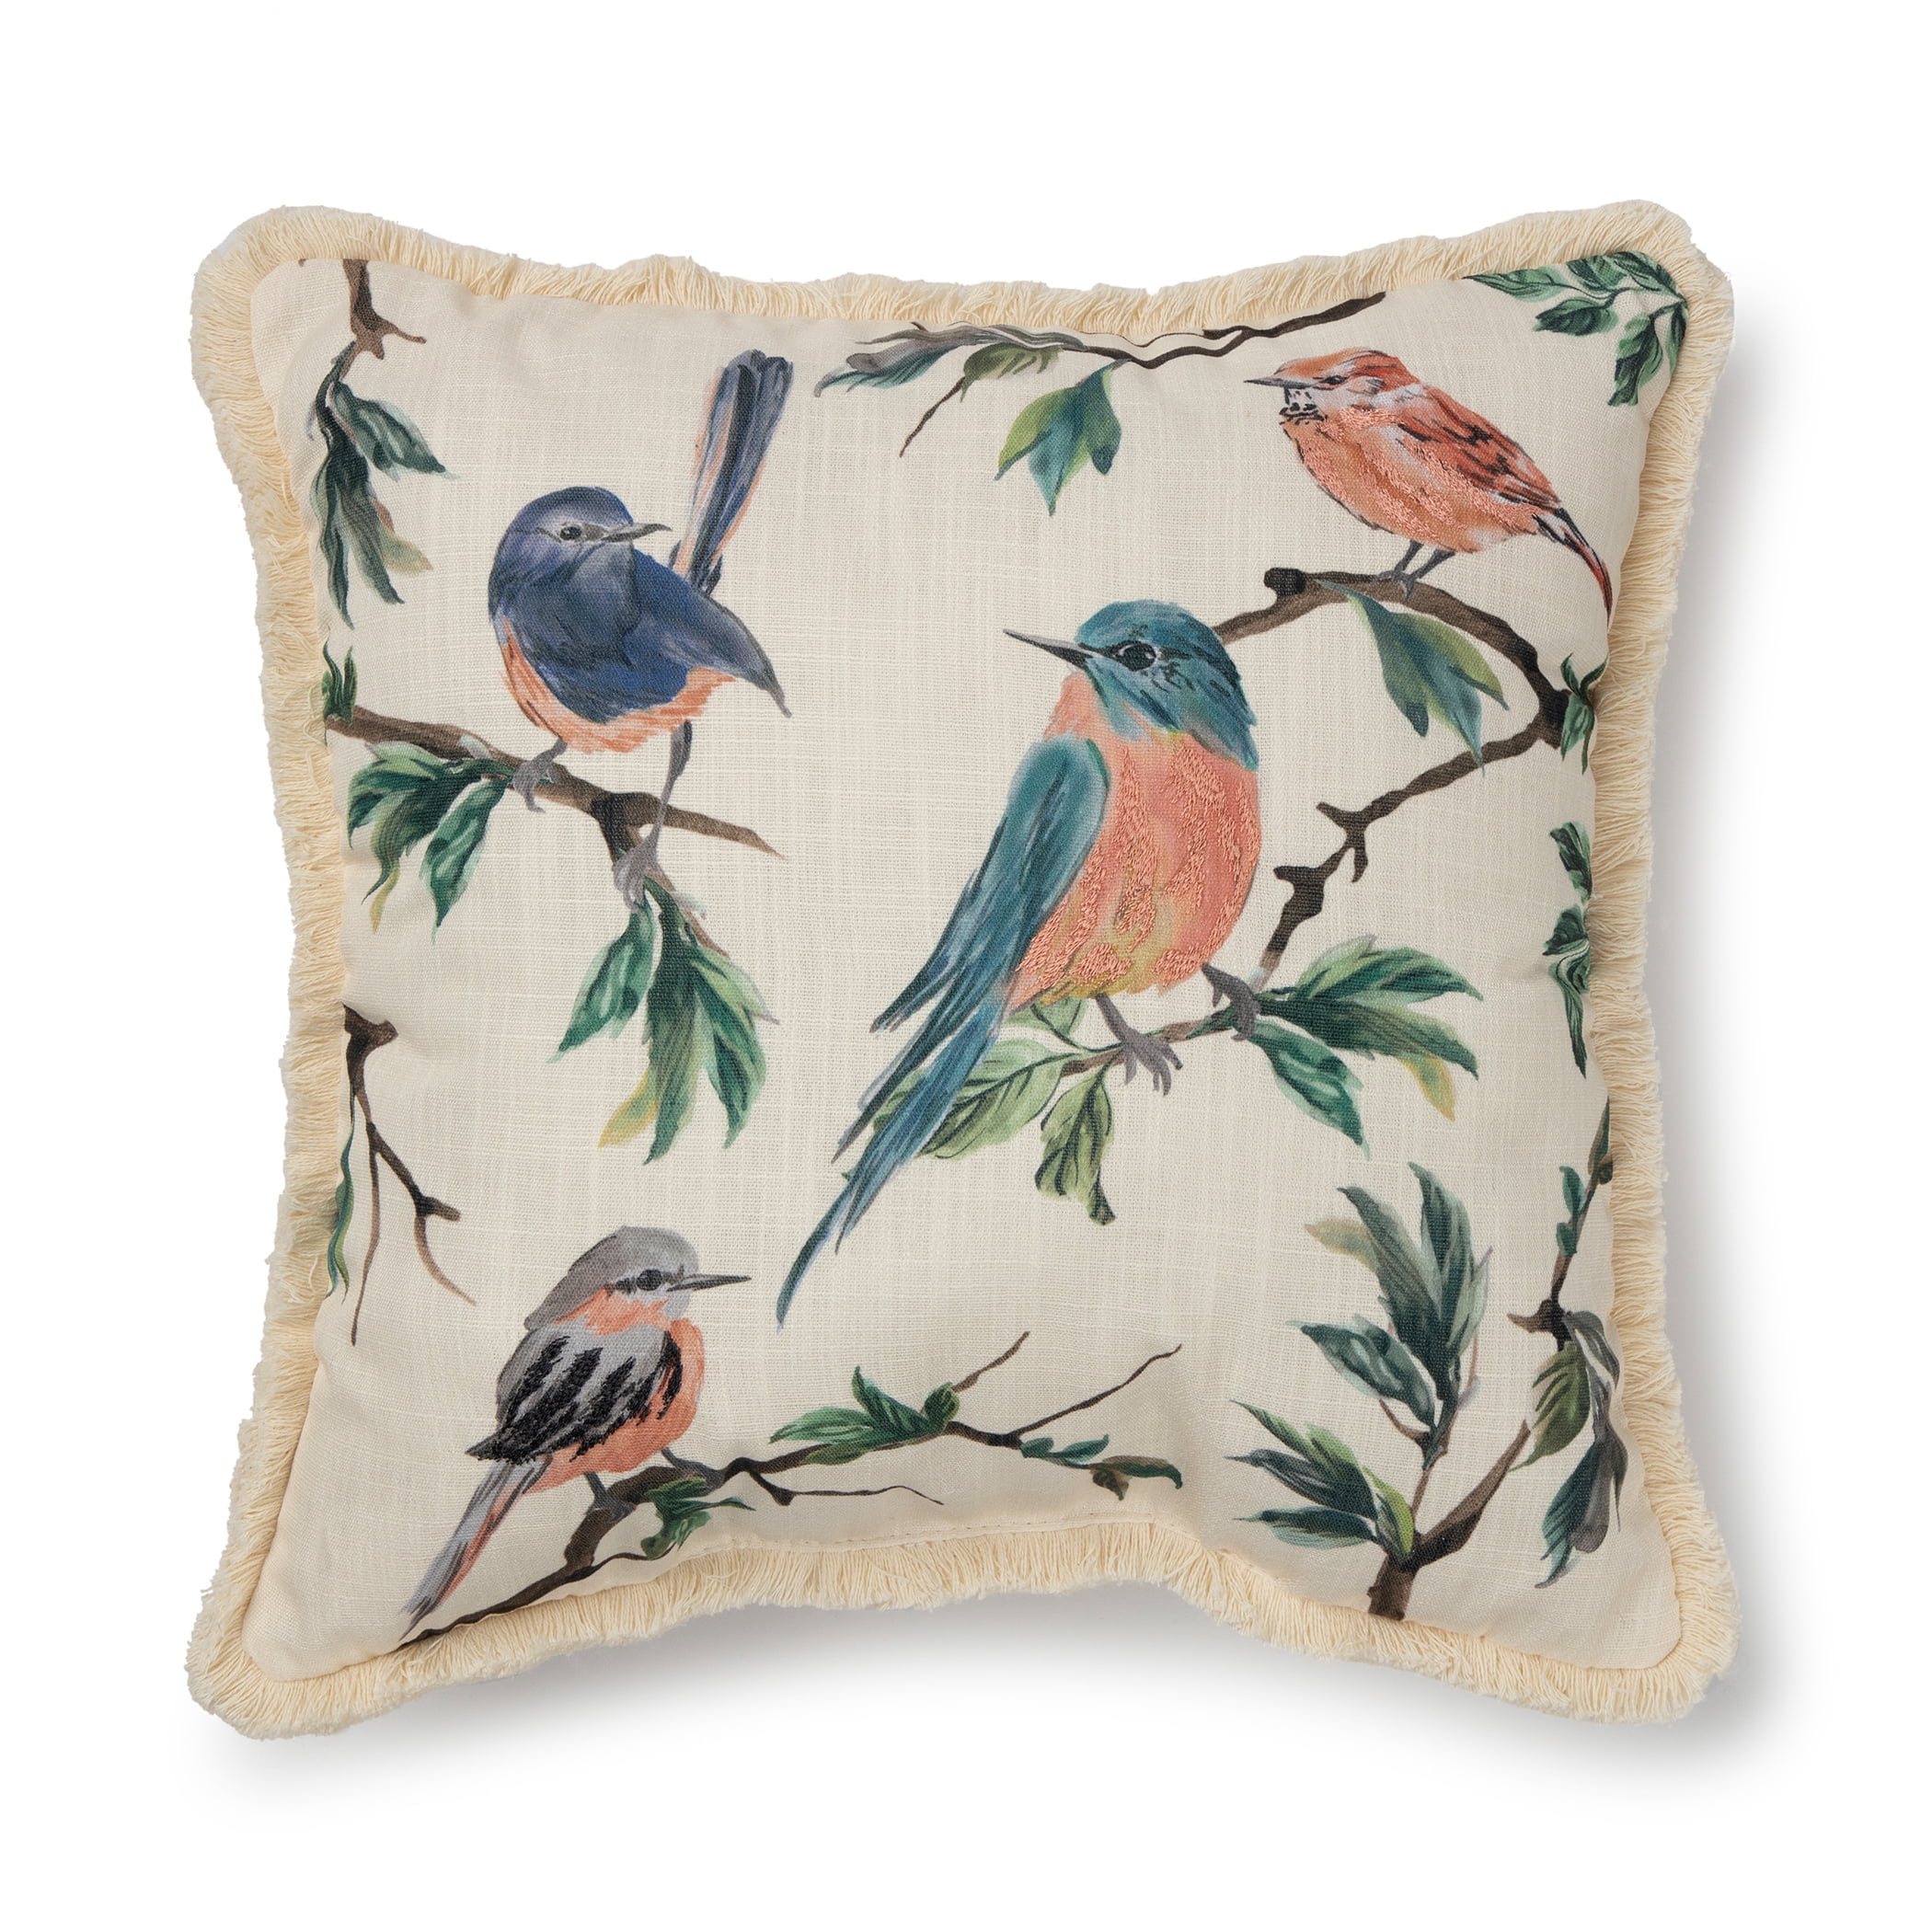 18" Colorful Printed Bird Cushion Cover Cotton Linen Throw Pillowcase Home Decor